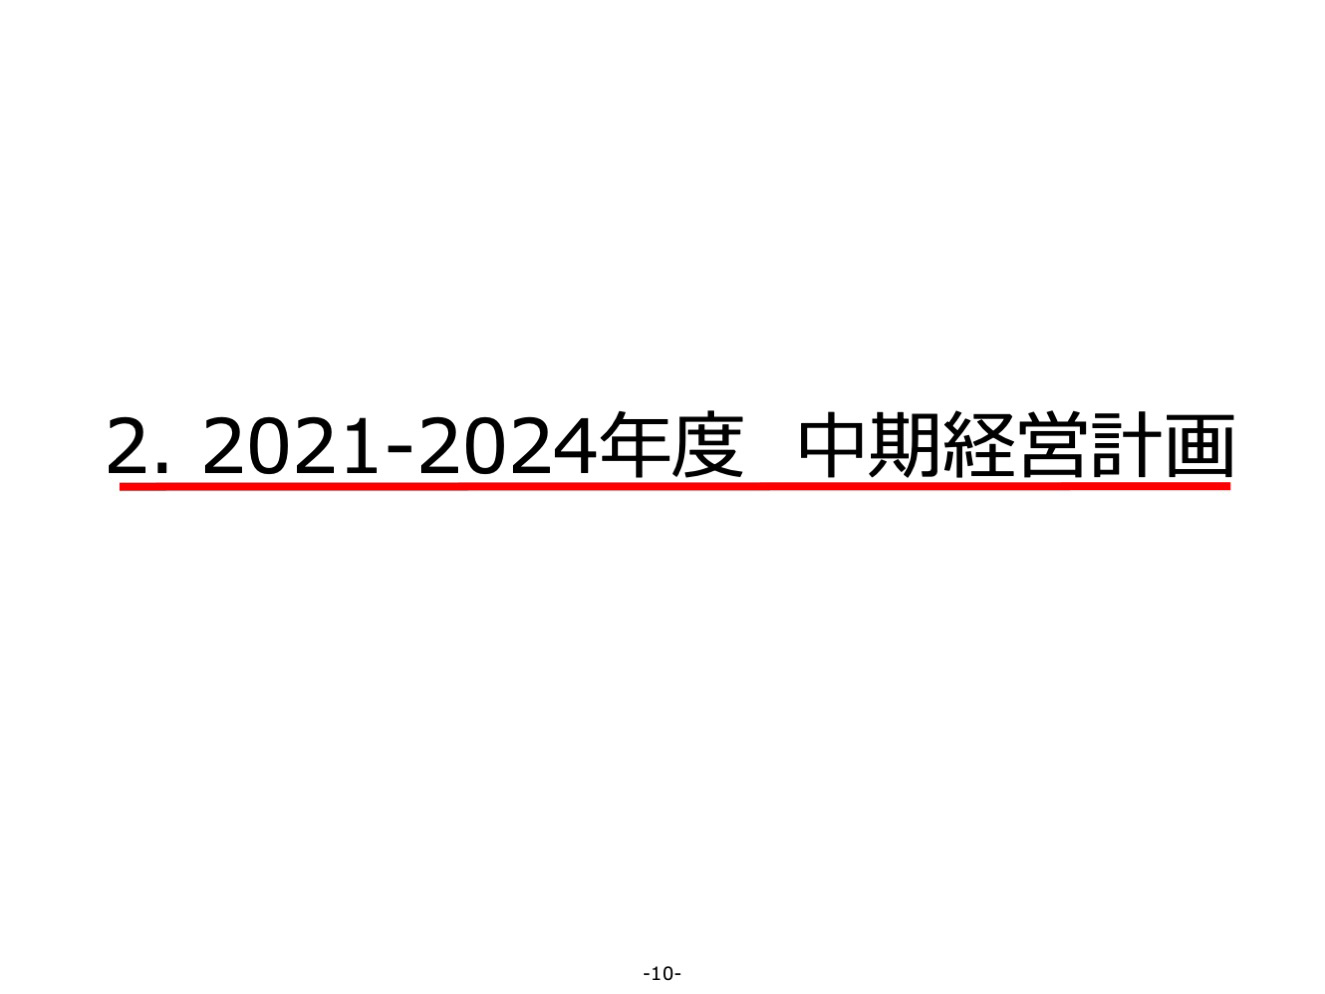 2021-2024年度 中期経営計画